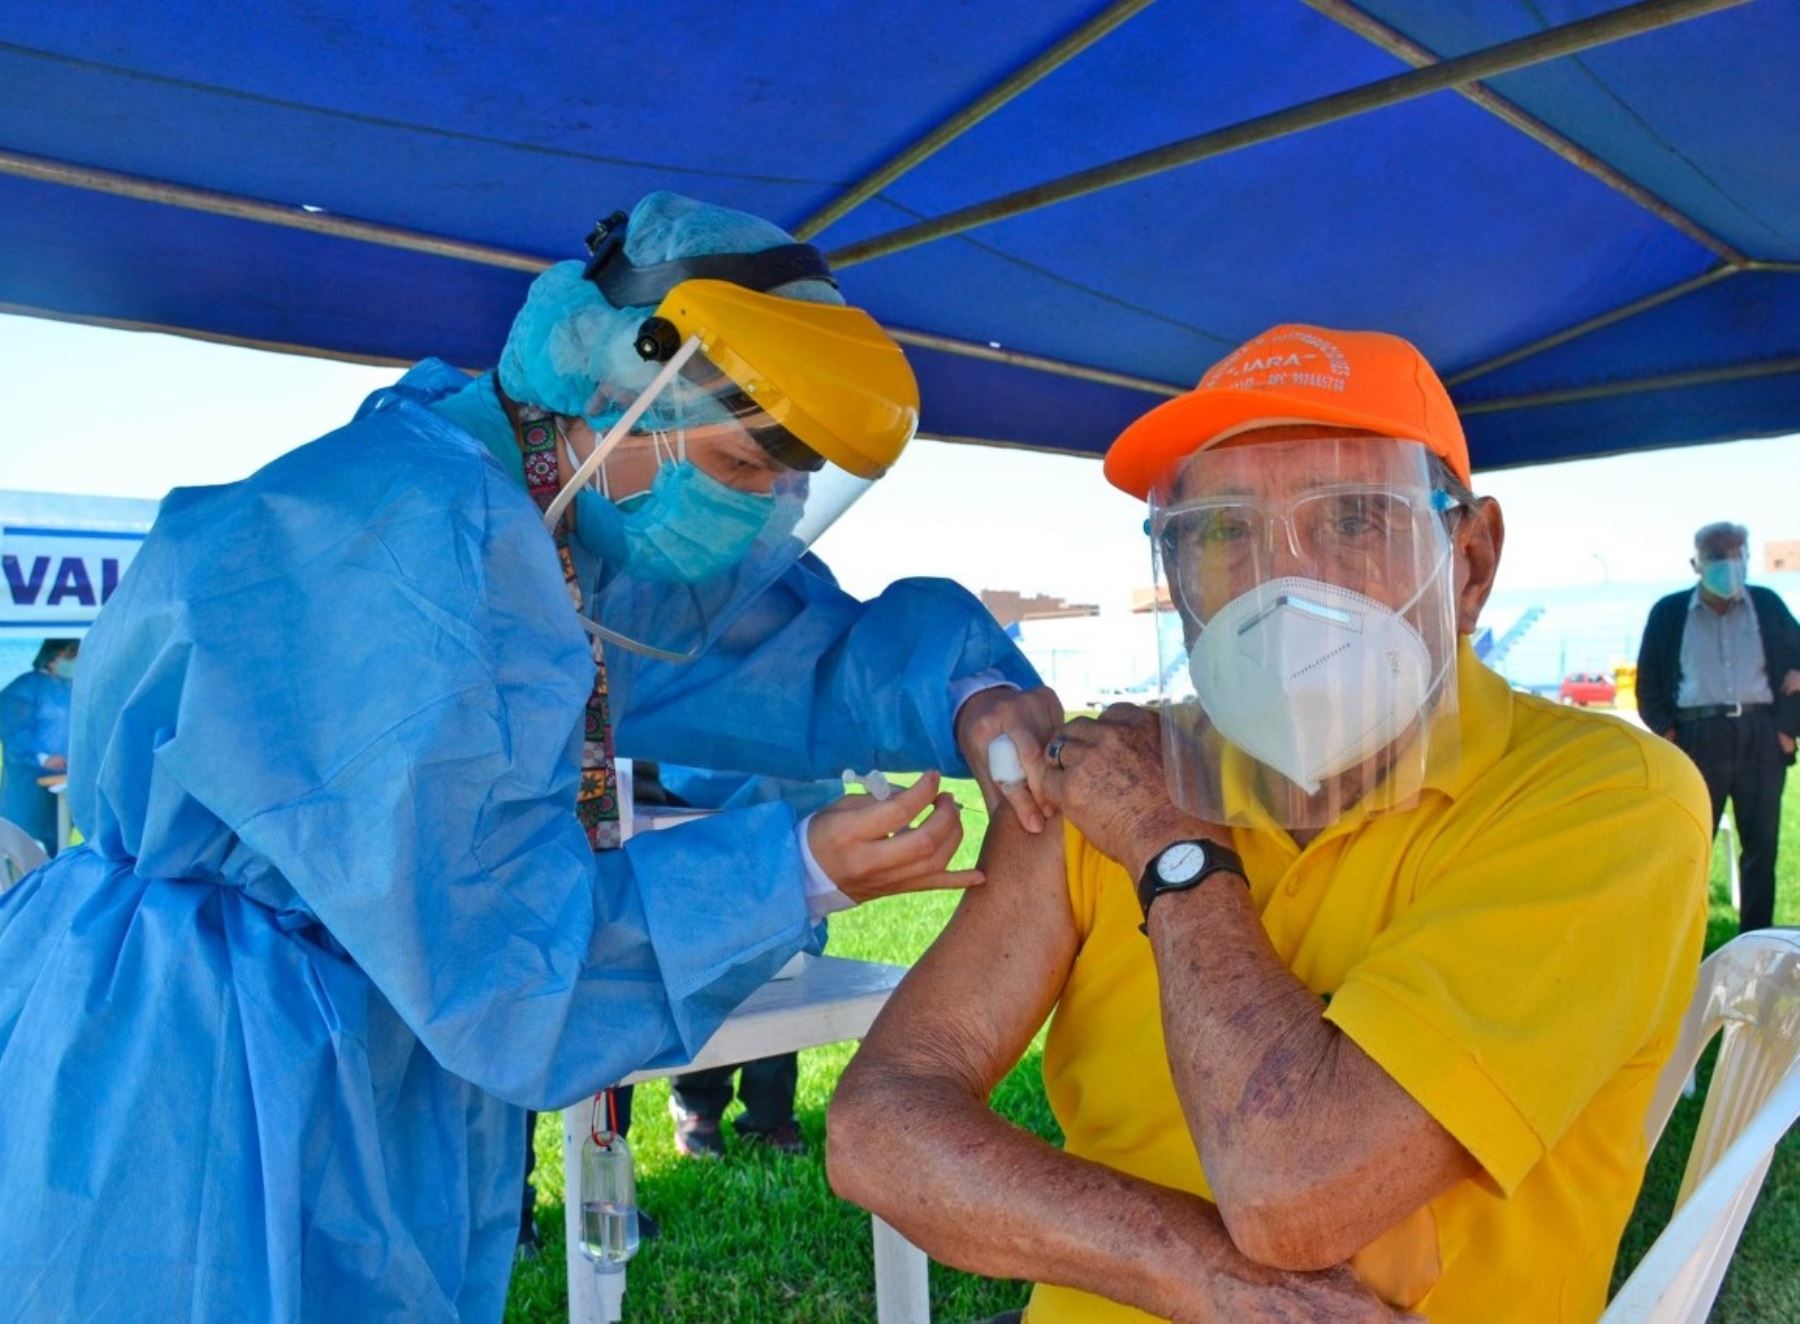 La Diresa Lima anunció que intensificará su campaña de vacunación contra el covid-19, con especial énfasis en los grupos de riesgo, como los adultos mayores y personas con comorbilidades y gestantes. ANDINA/Difusión